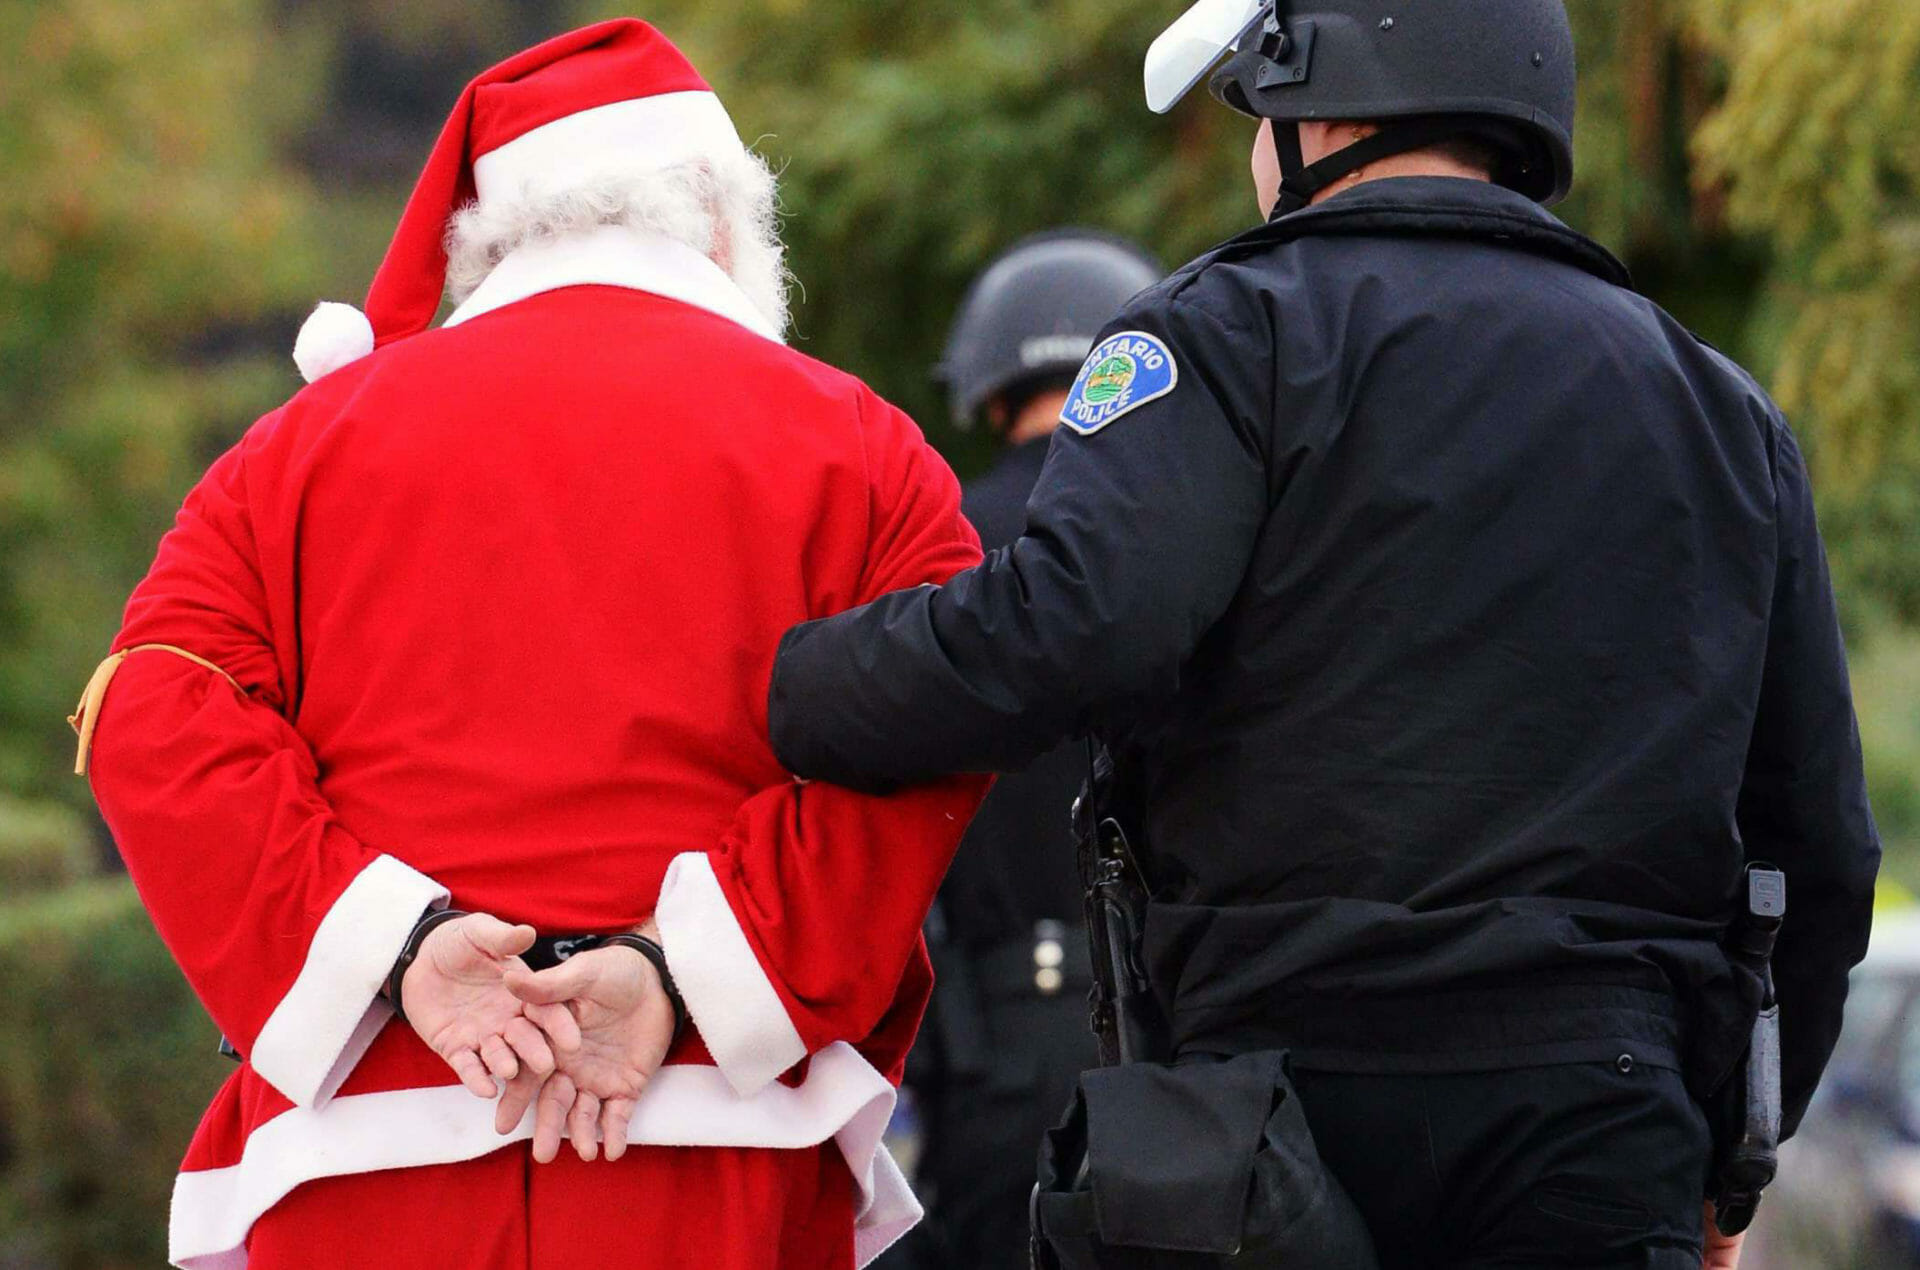 Moș Crăciun, reținut de poliție pentru că nu purta mască! VIDEO cu incidentul ce a provocat valuri de indignare